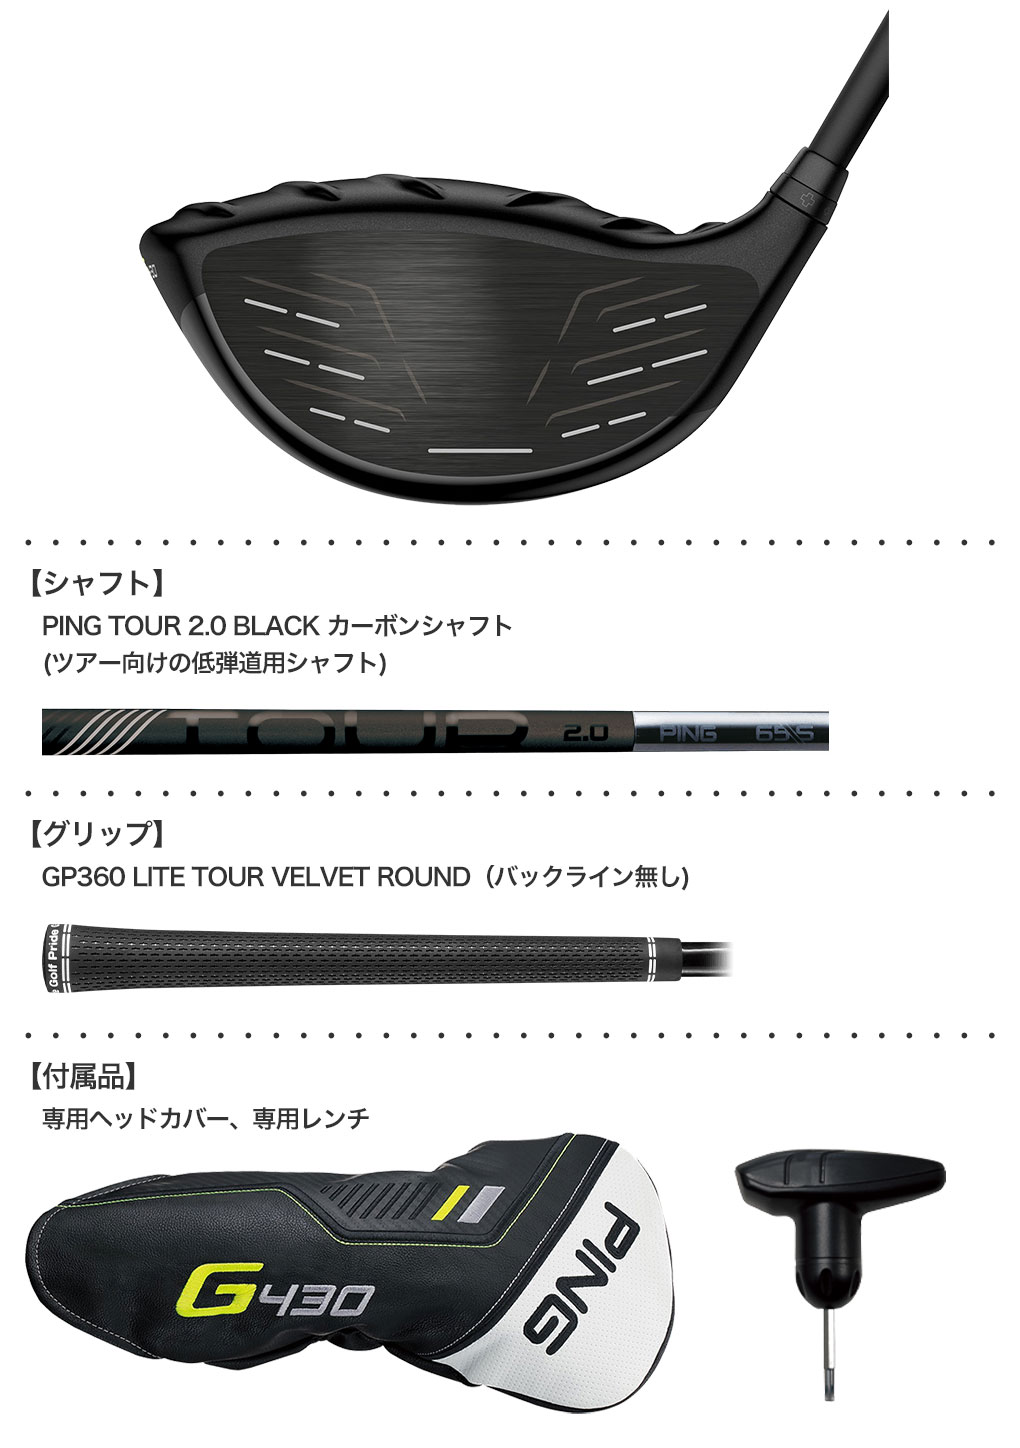 ピン G430 LST ドライバー メンズ 右用 PING TOUR 2.0 BLACK メーカー保証 PING ゴルフクラブ 日本正規品  2022年11月発売